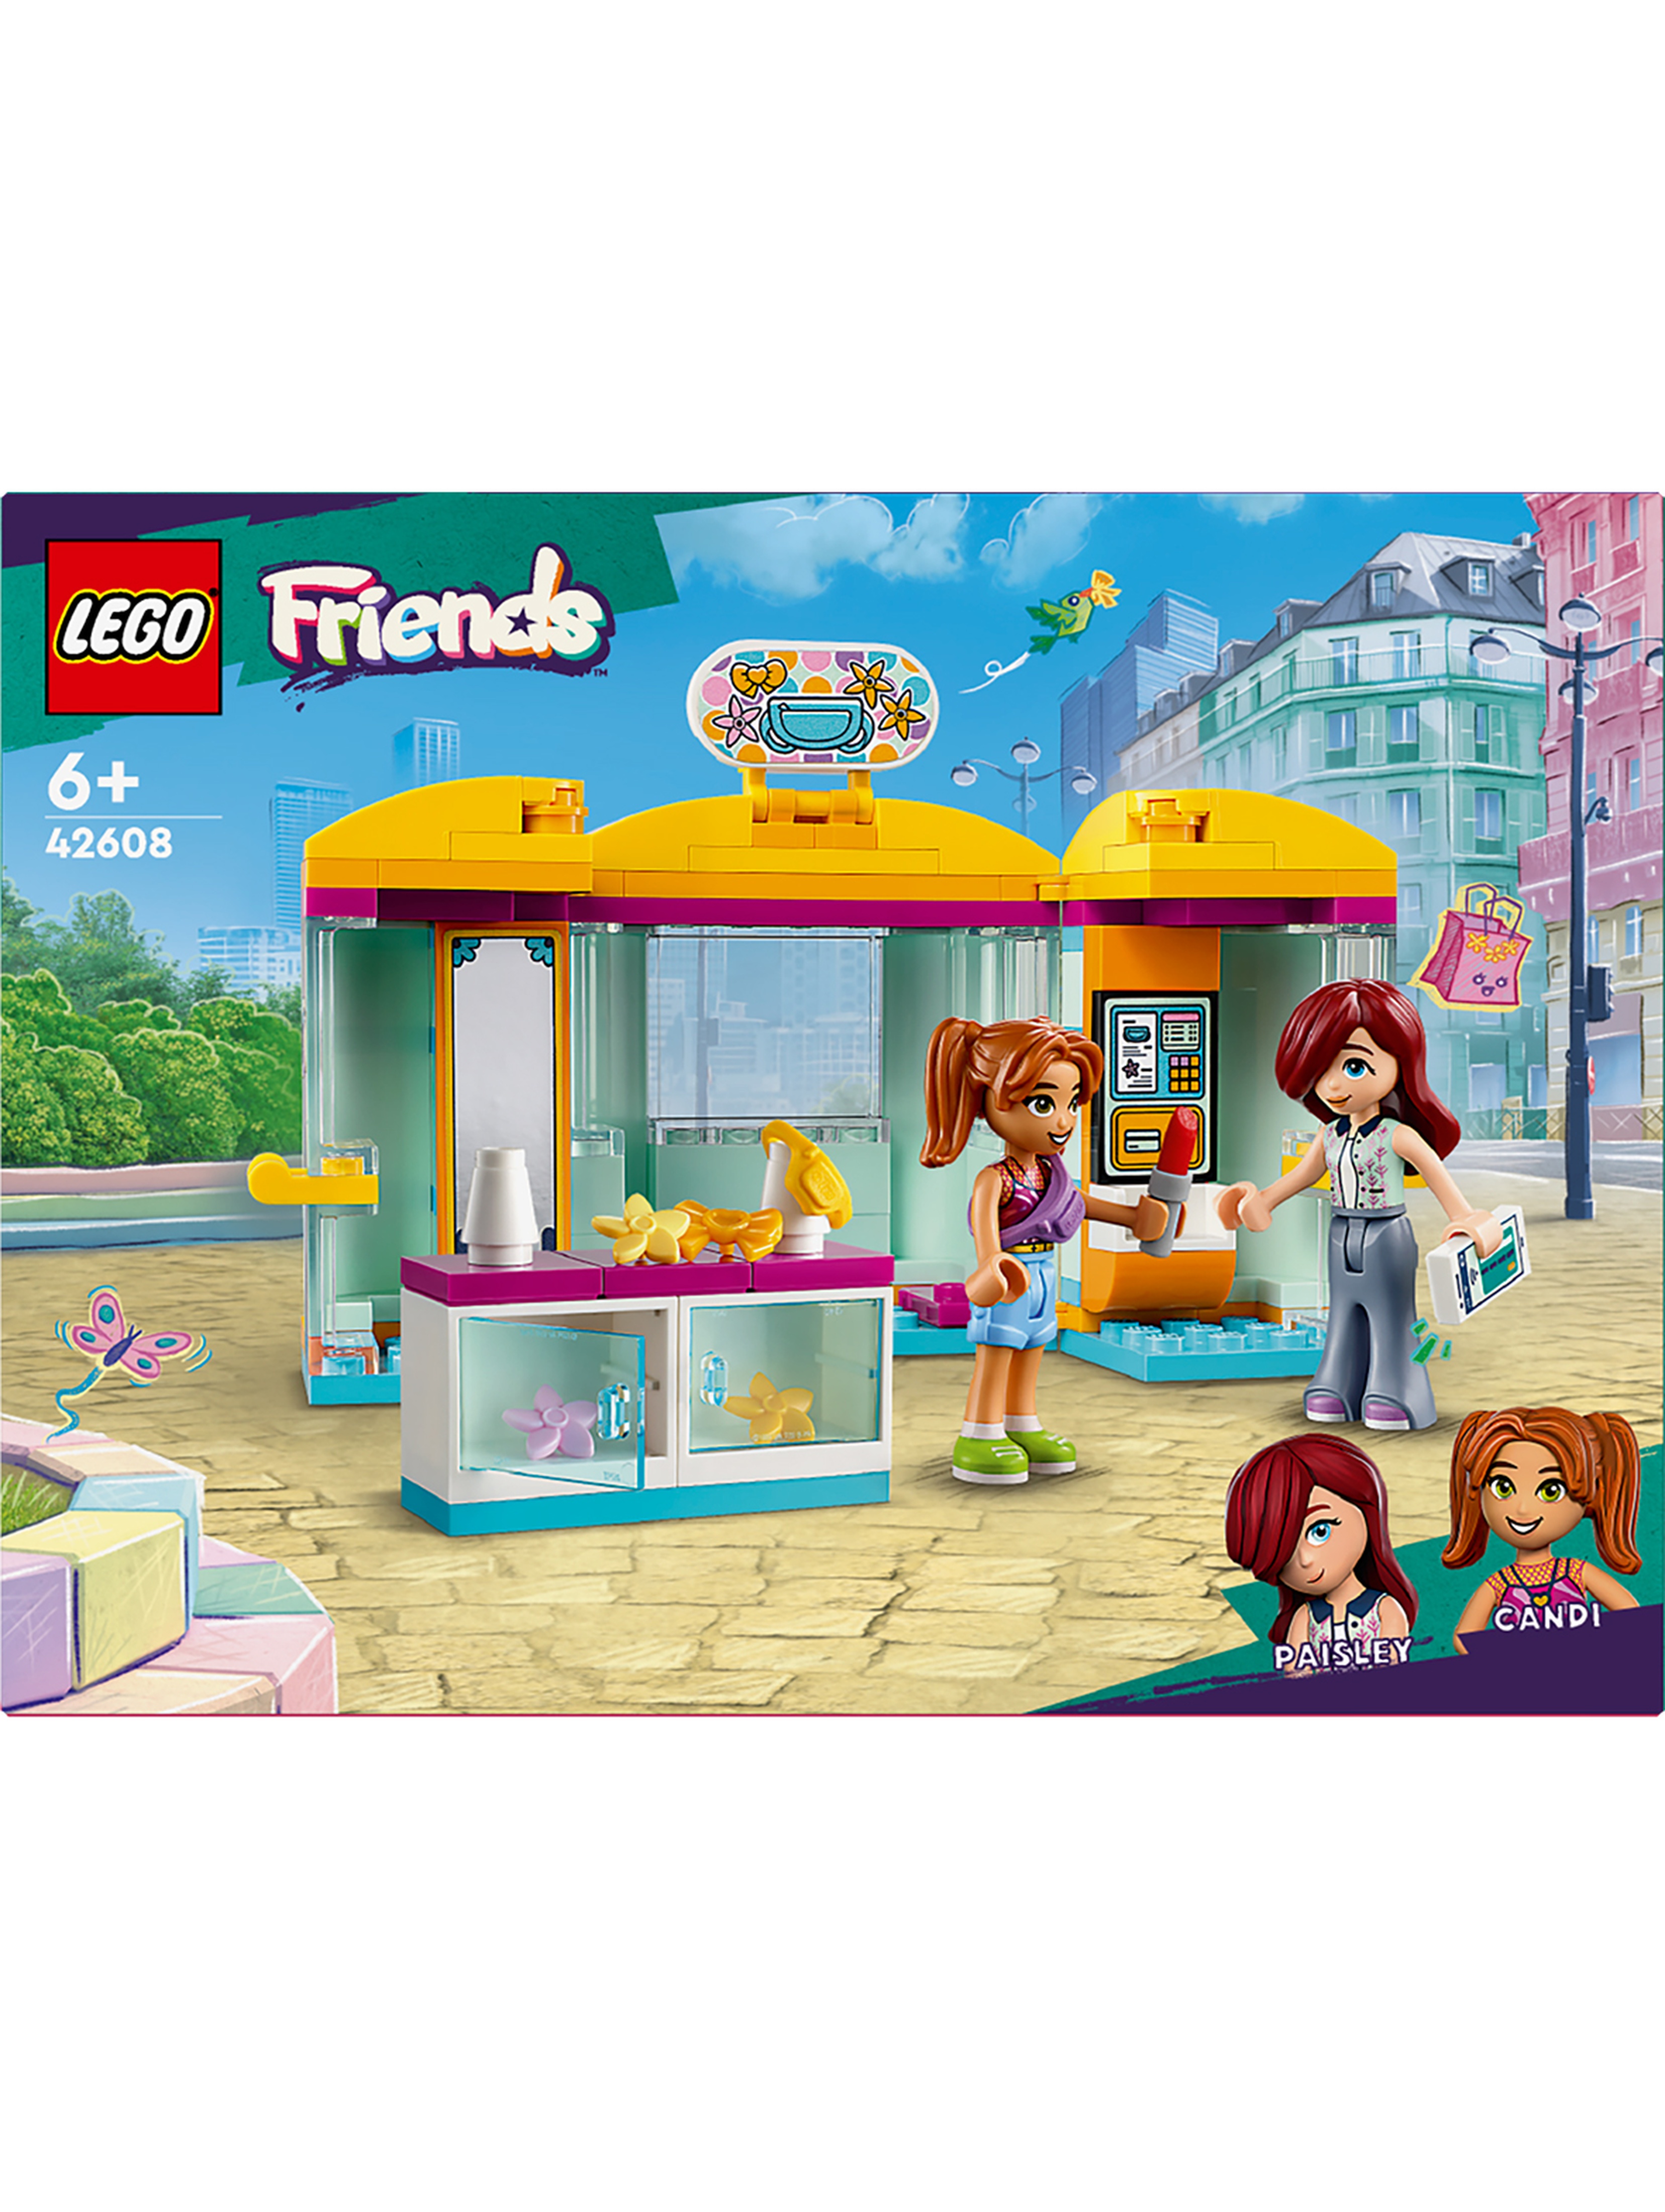 LEGO Klocki Friends Mały sklep z akcesoriami